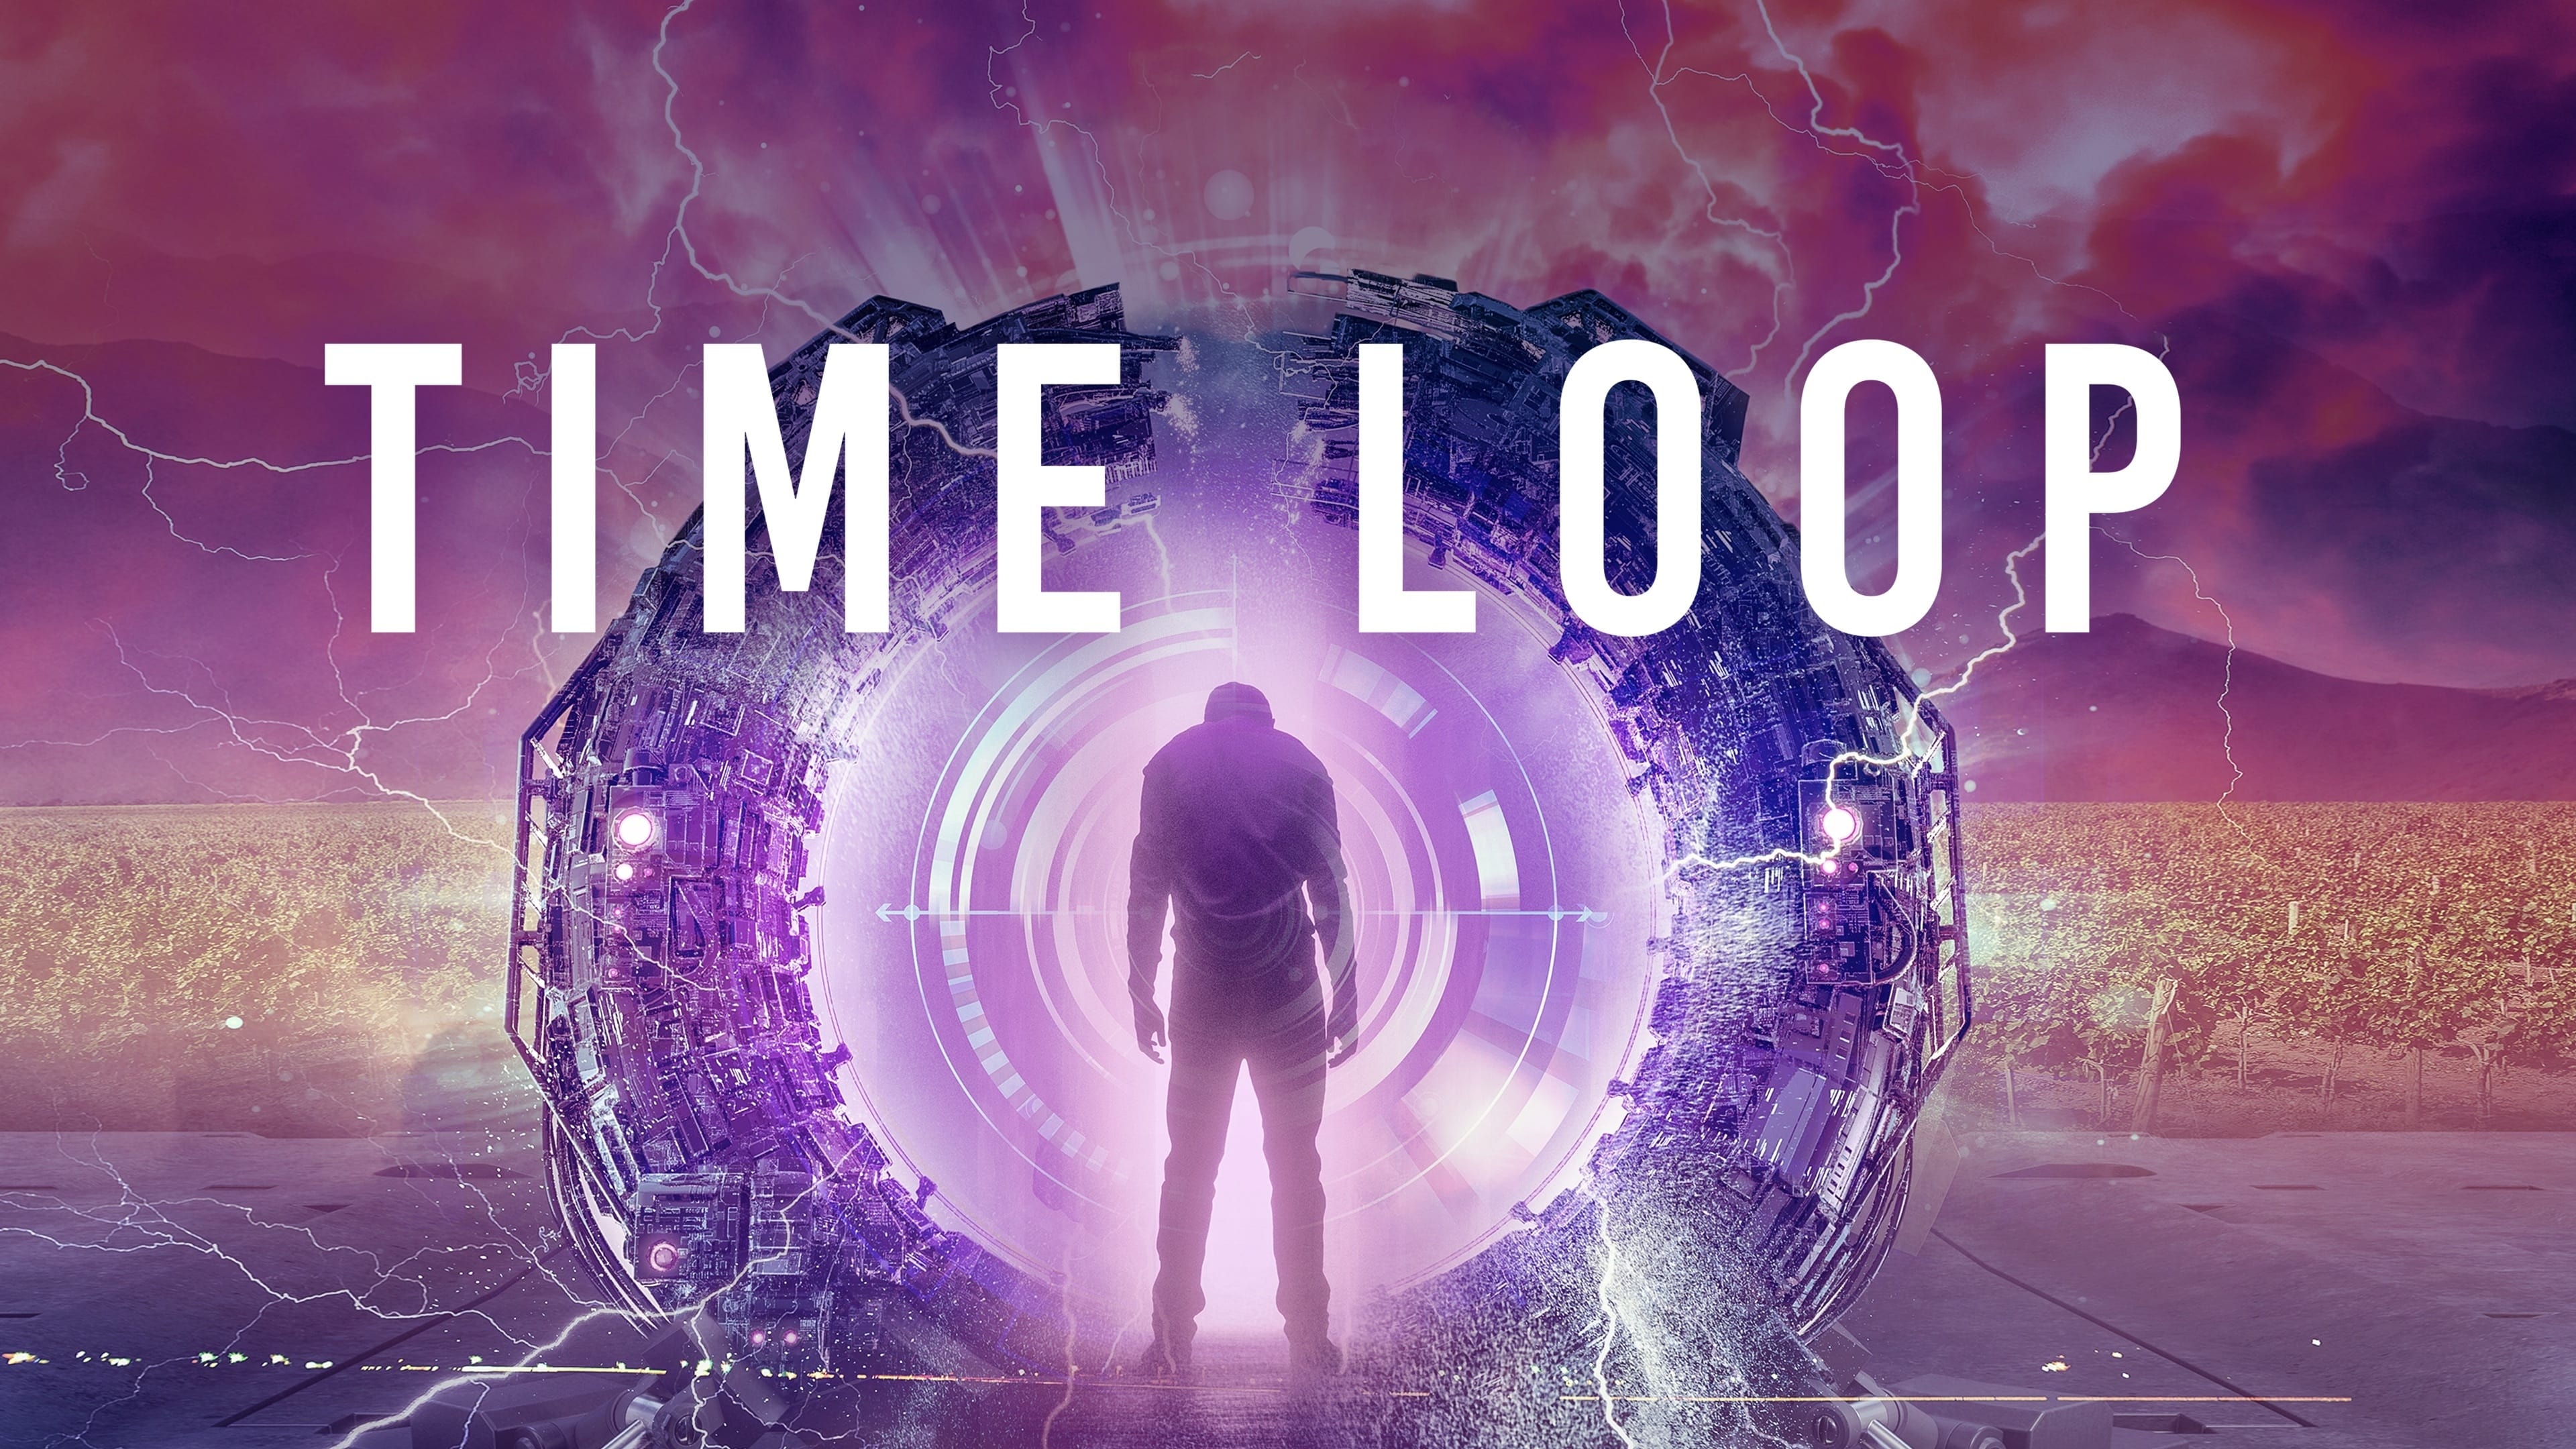 movie review time loop